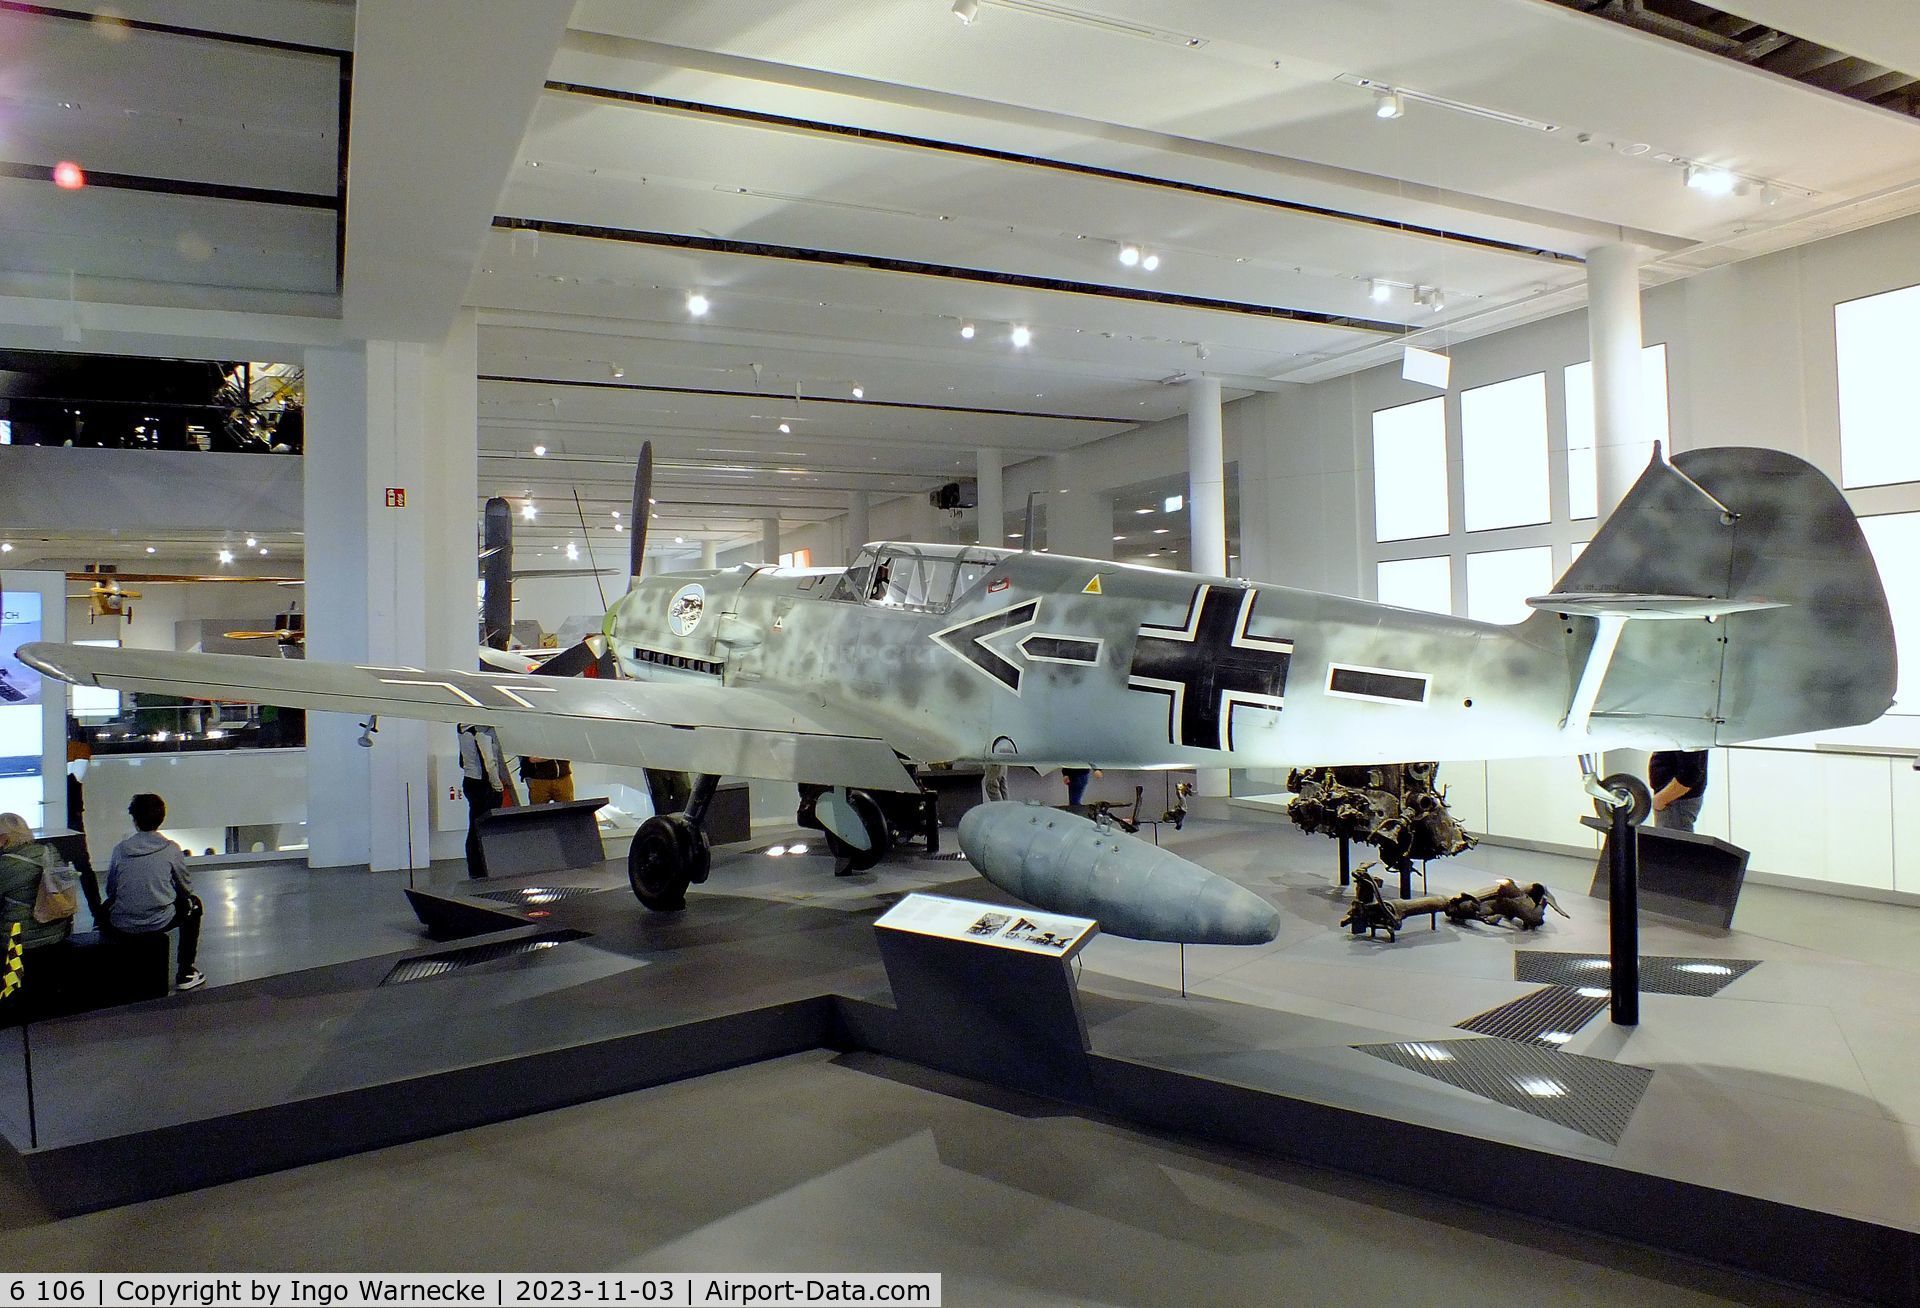 6 106, 1938 Messerschmitt Bf-109E-1 C/N 790, Messerschmitt Bf 109E-1, ex-Legion Condor, ex-Ejercito del Aire, displayed since 1973 in the markings of Werner Mölders' plane, at Deutsches Museum, München (Munich)